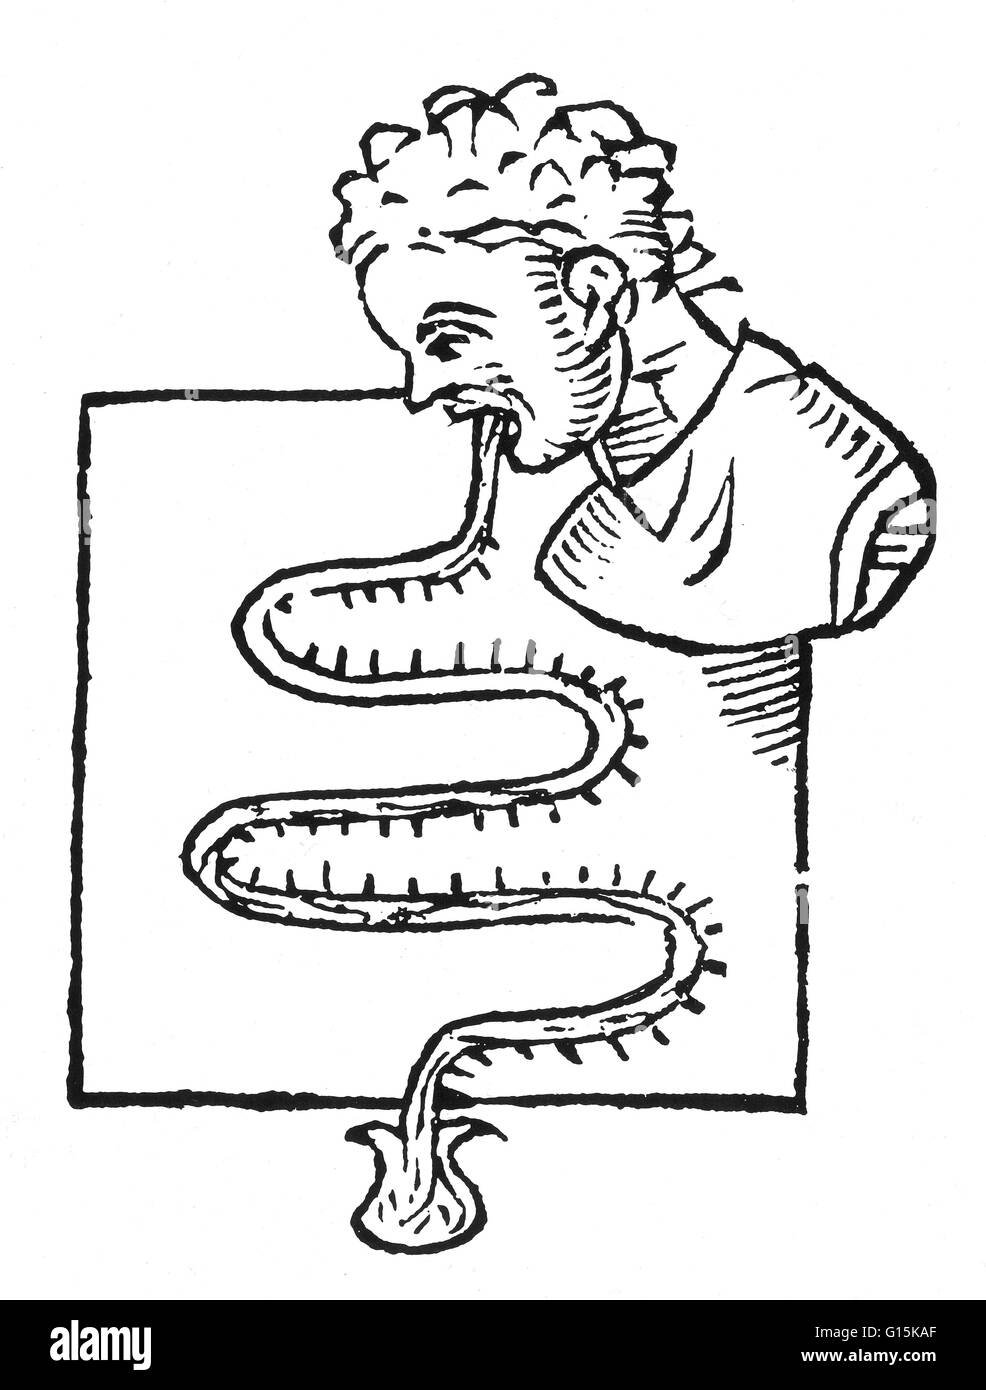 Früheste bekannt Abbildung von einem oralen Thermometer, gezeichnet von seinem Erfinder, dem italienischen Arzt Sanctorius Sanctorius (1561-1636), im Jahre 1625.  Das Thermometer wurde von Glasröhren und das Fläschchen im Boden enthaltene Quecksilber gemacht.  Zu einer Lesung, die pat Stockfoto